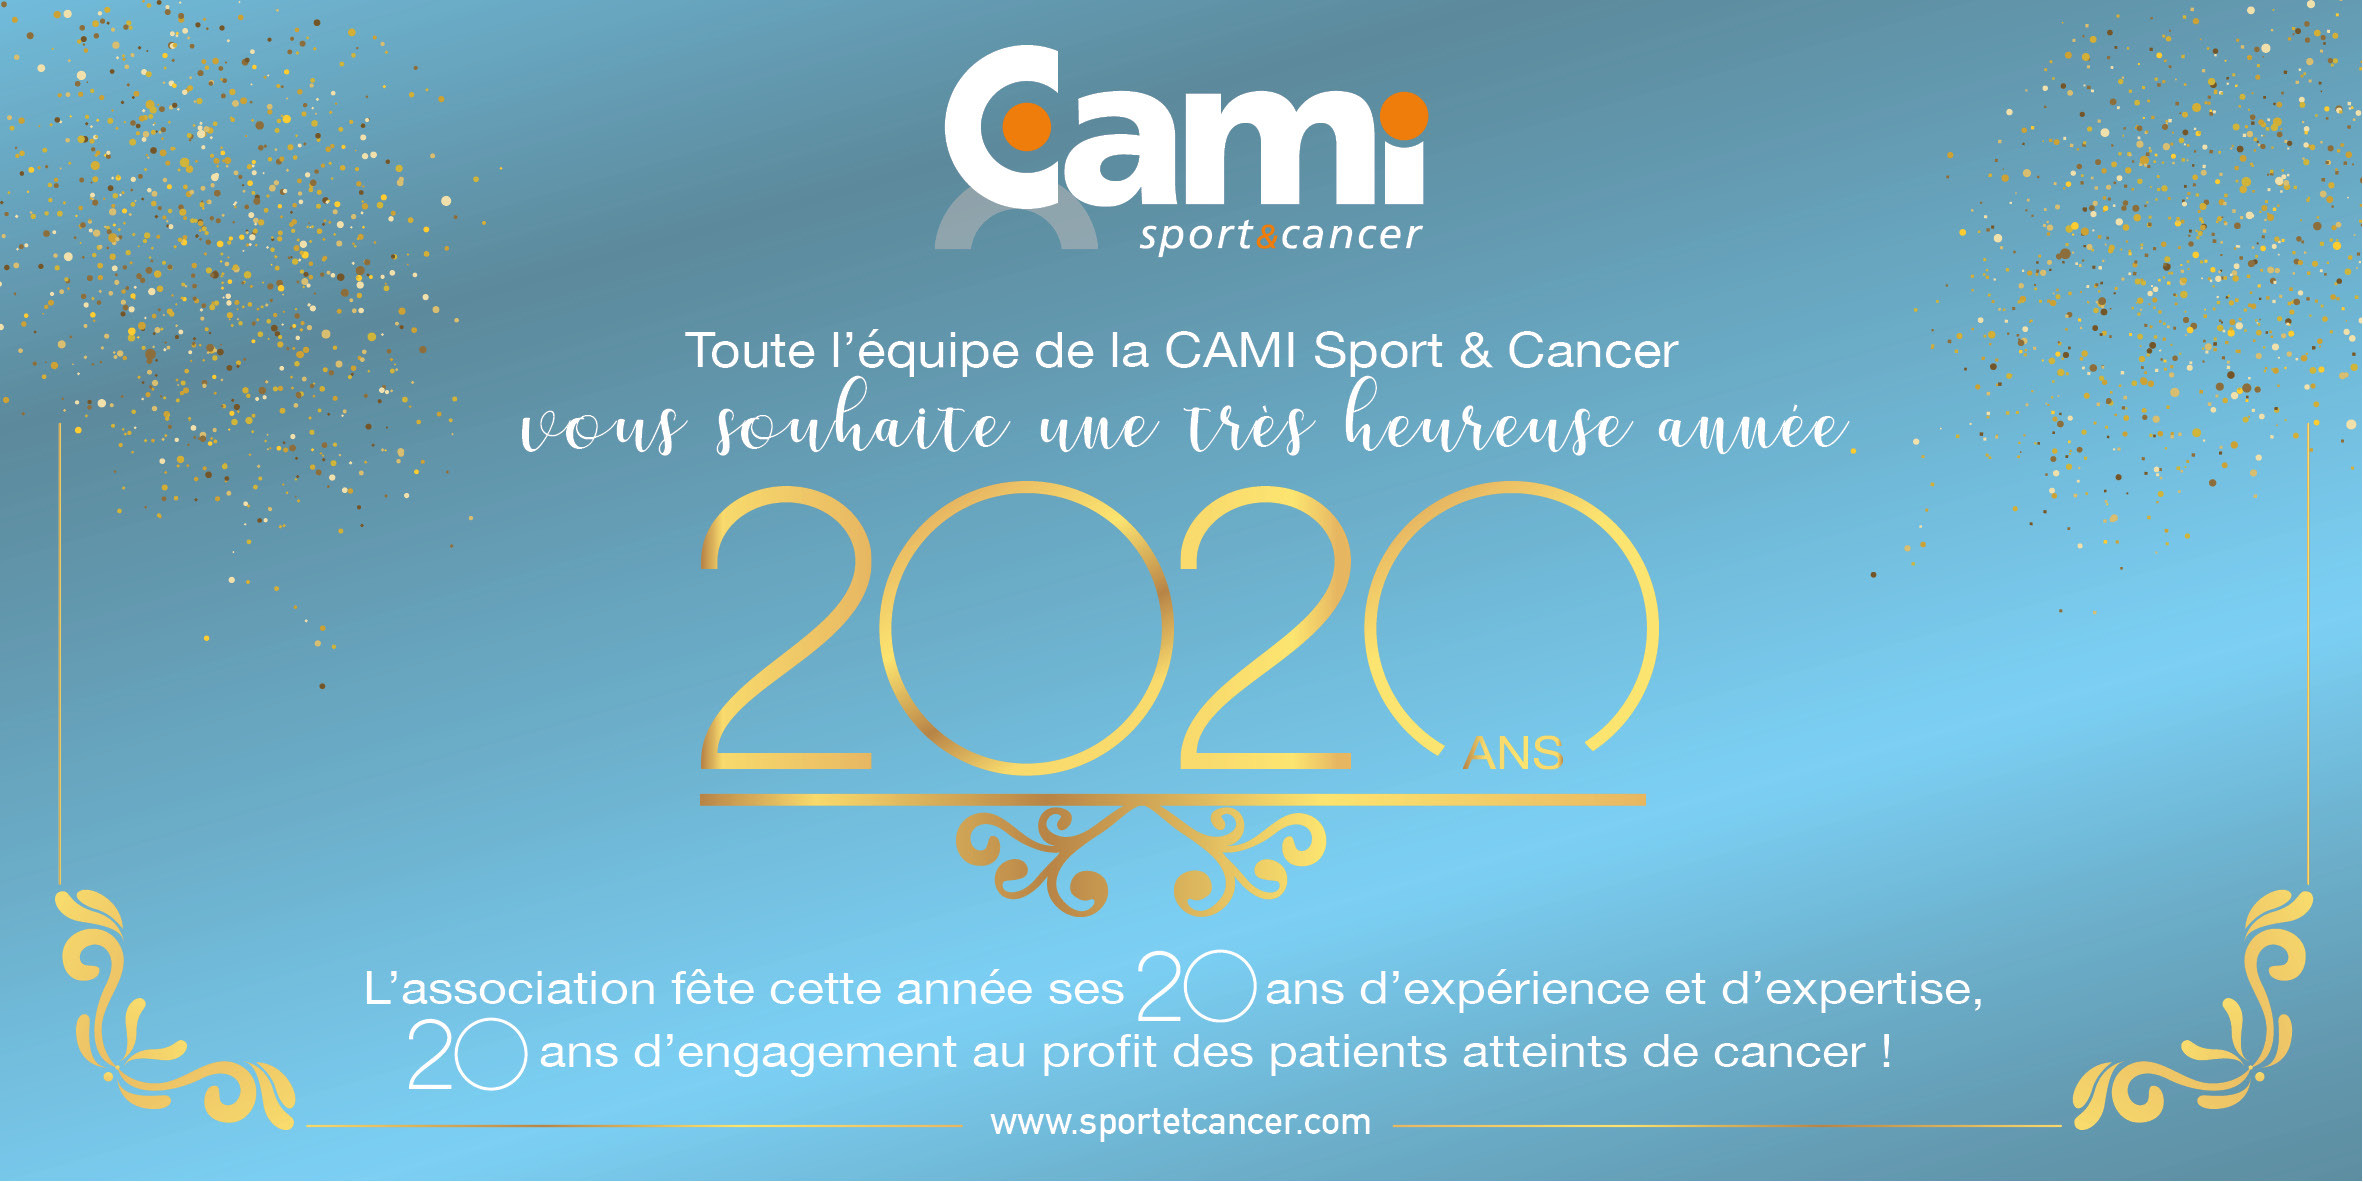 La CAMI Sport & Cancer fête ses 20 ans en 2020 !